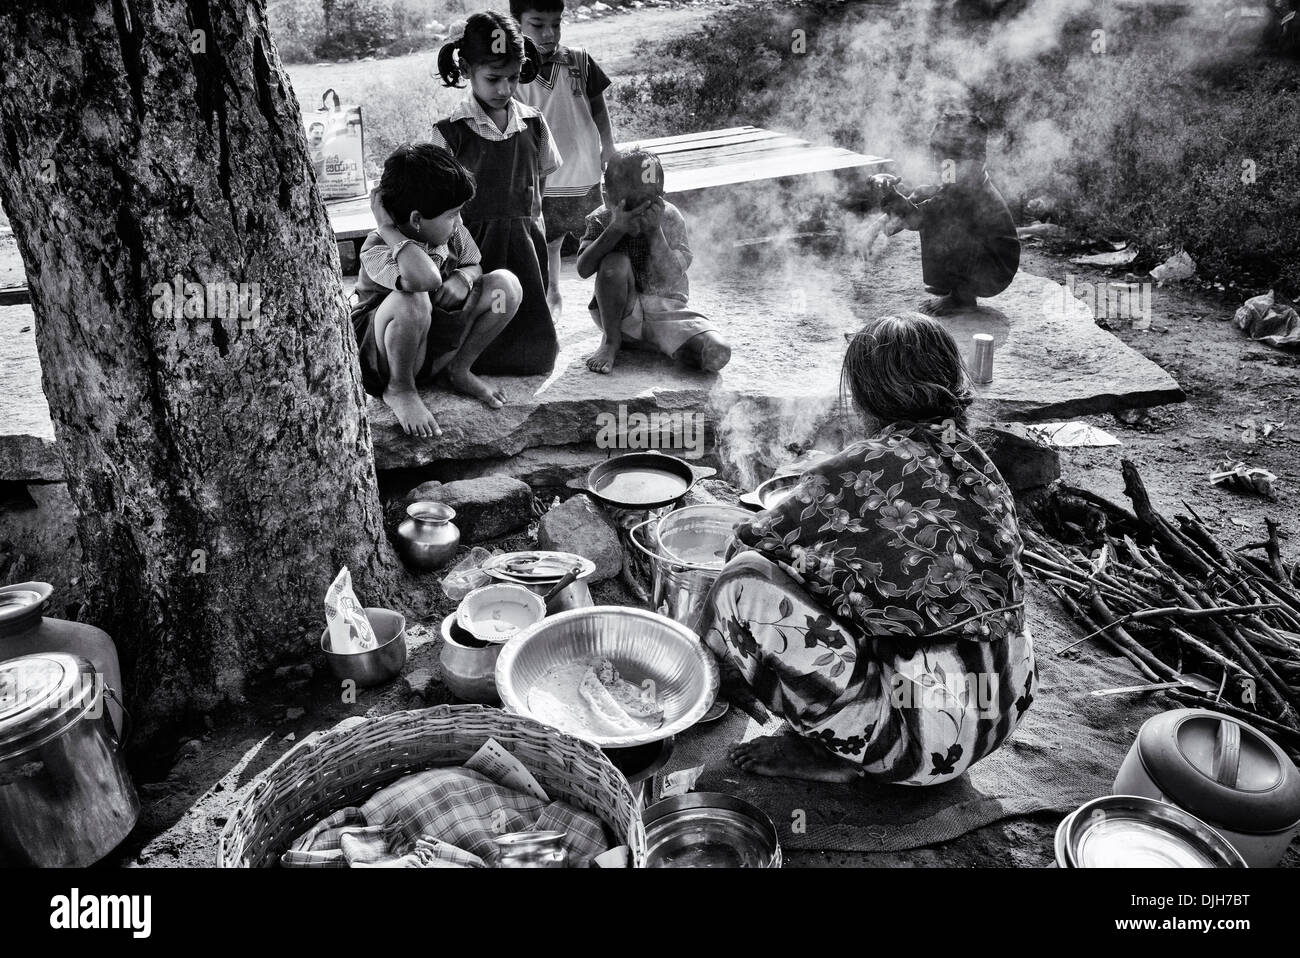 Indische Frau Kochen Dosa für Kinder im ländlichen Indien Dorfstraße. Andhra Pradesh, Indien. Schwarz und weiß. Stockfoto